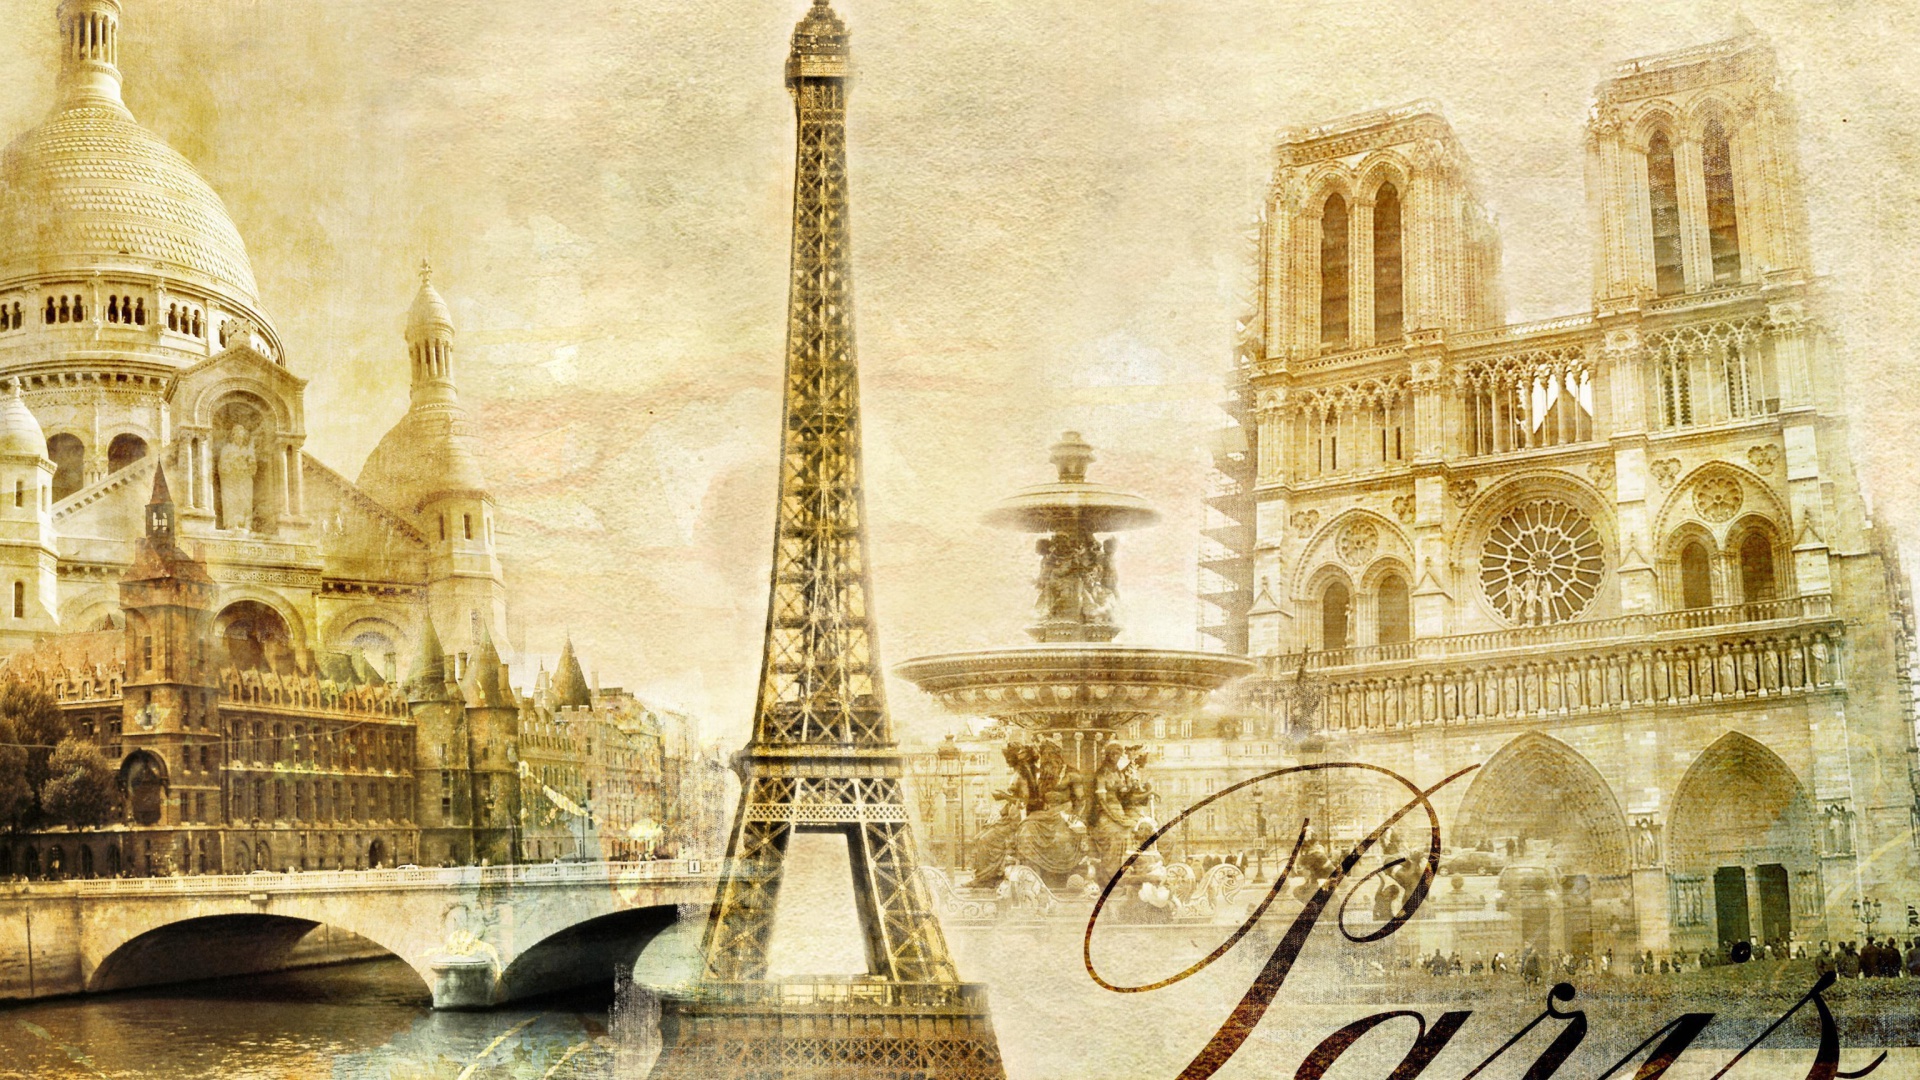 Das Paris, Sacre Coeur, Cathedrale Notre Dame Wallpaper 1920x1080